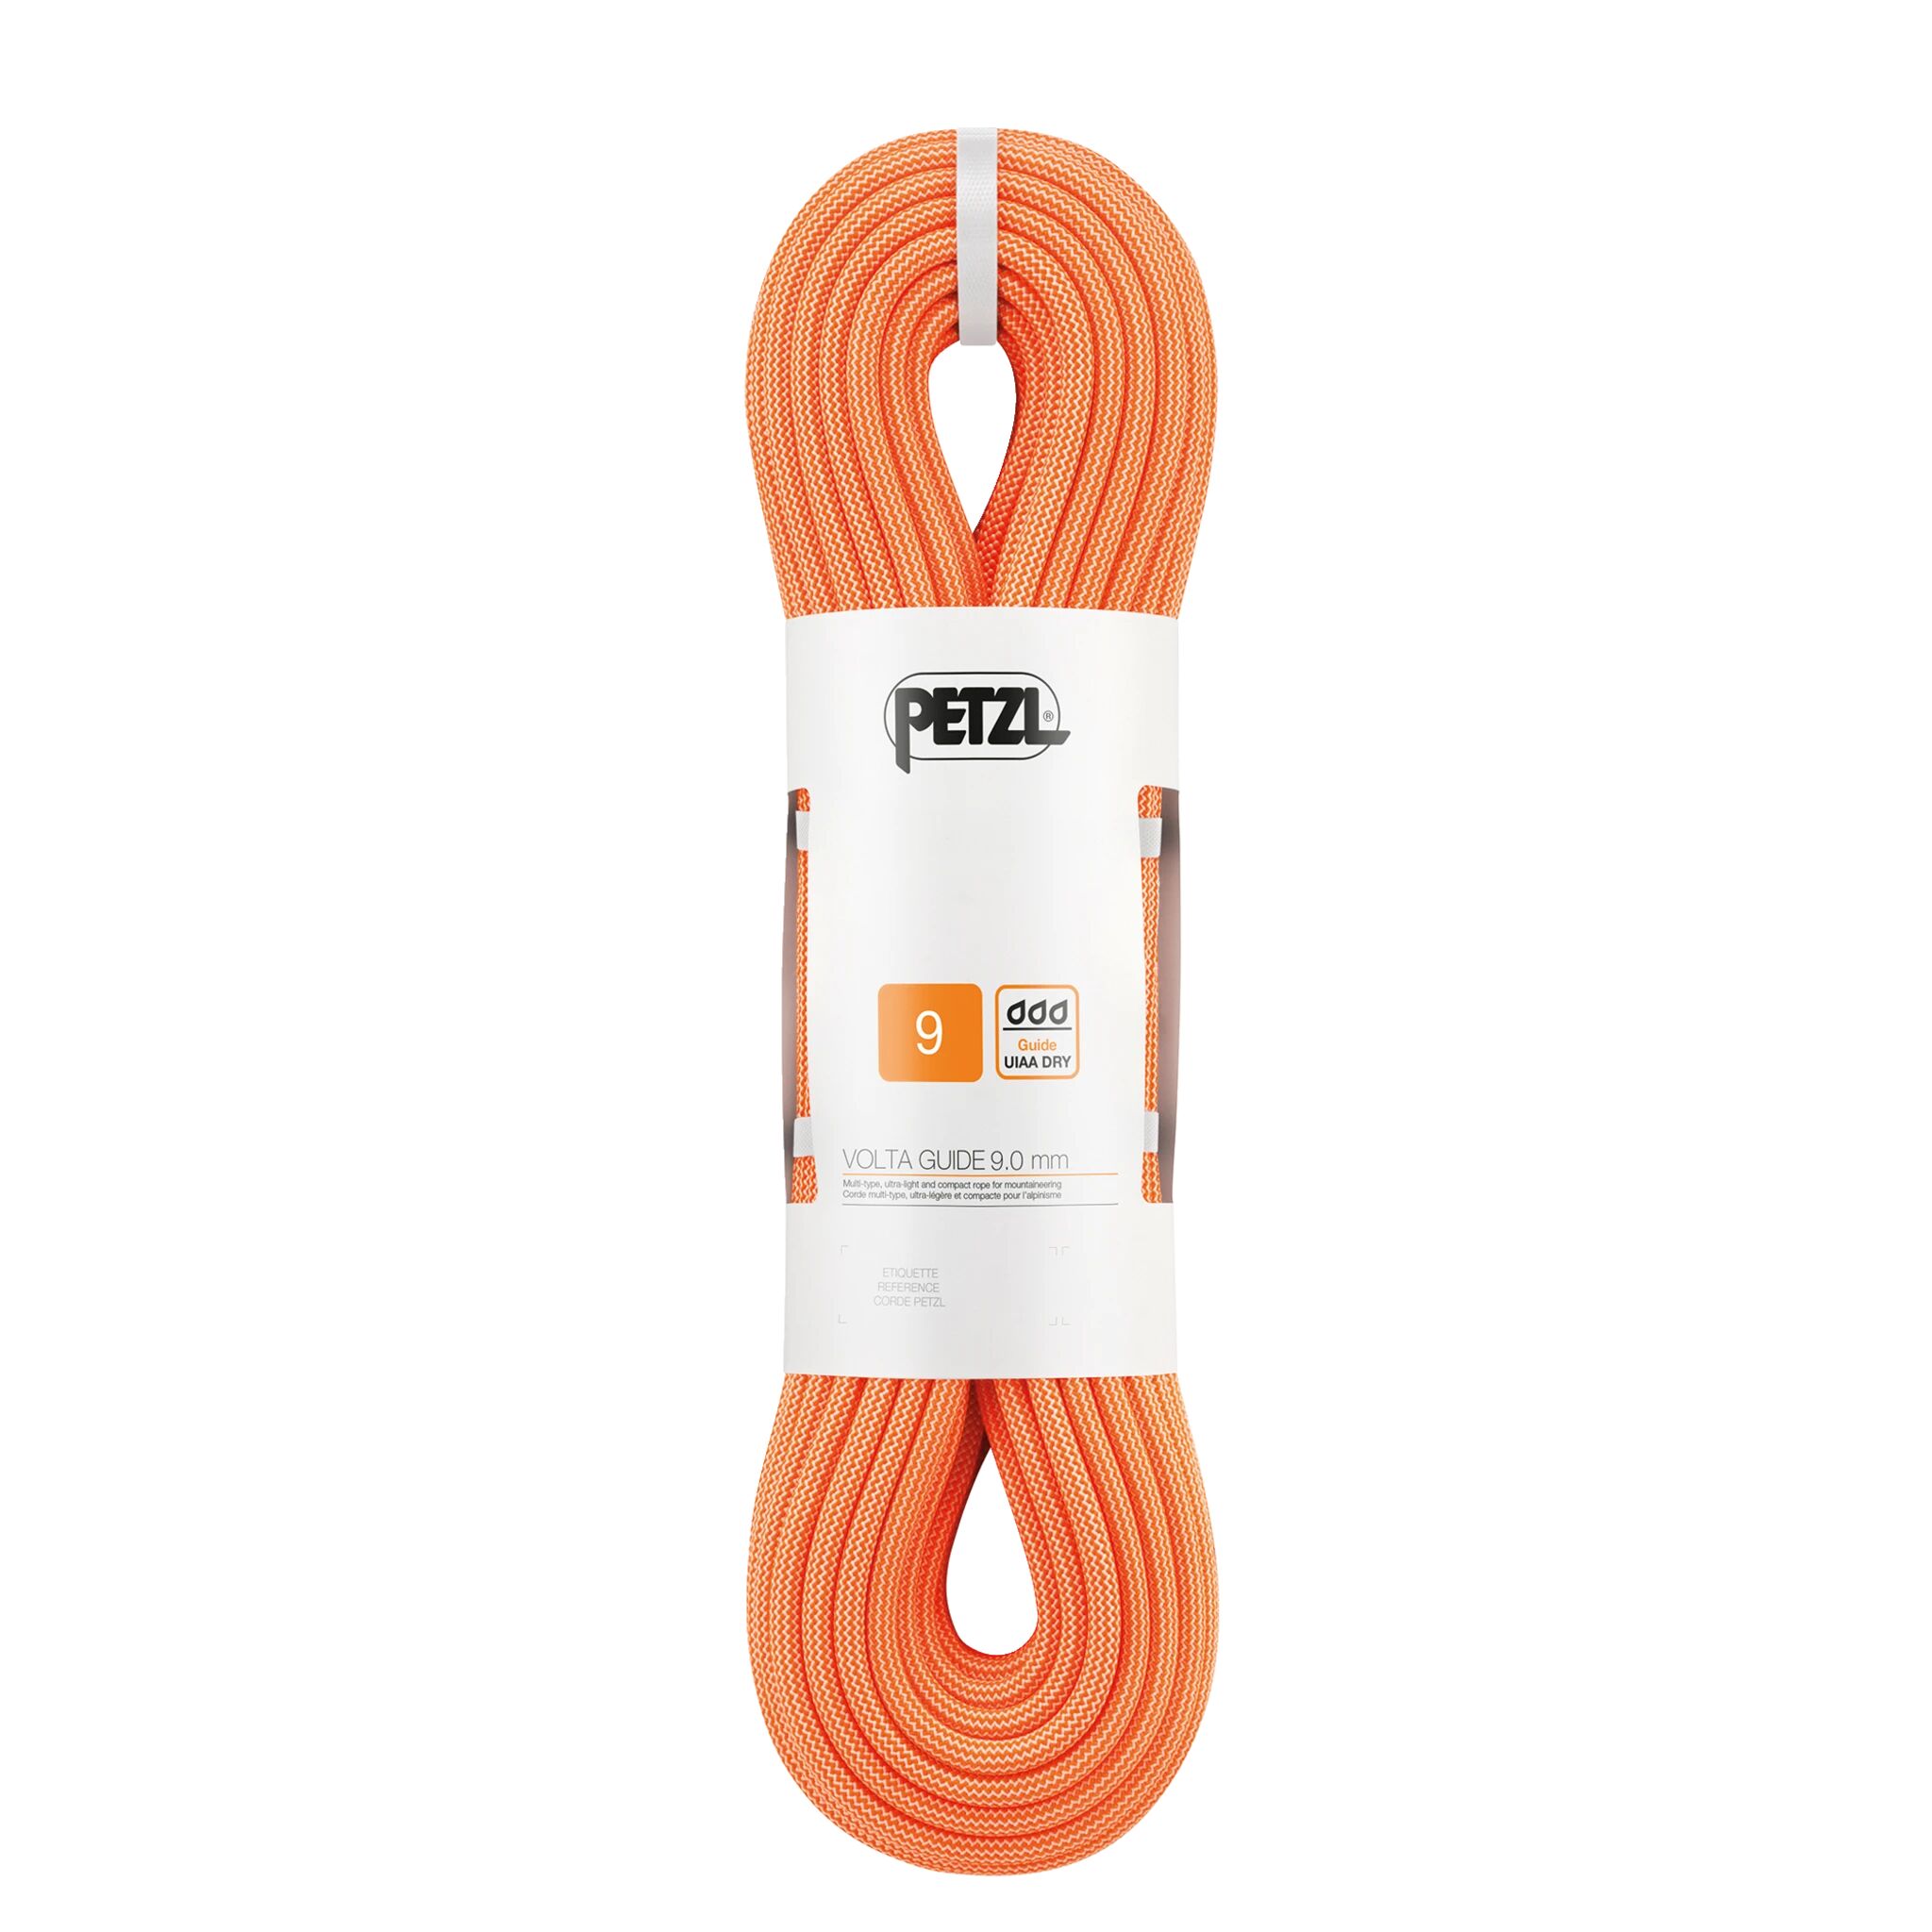 Petzl Volta Guide 9,0 mm 60 m, klatretau 60 Orange